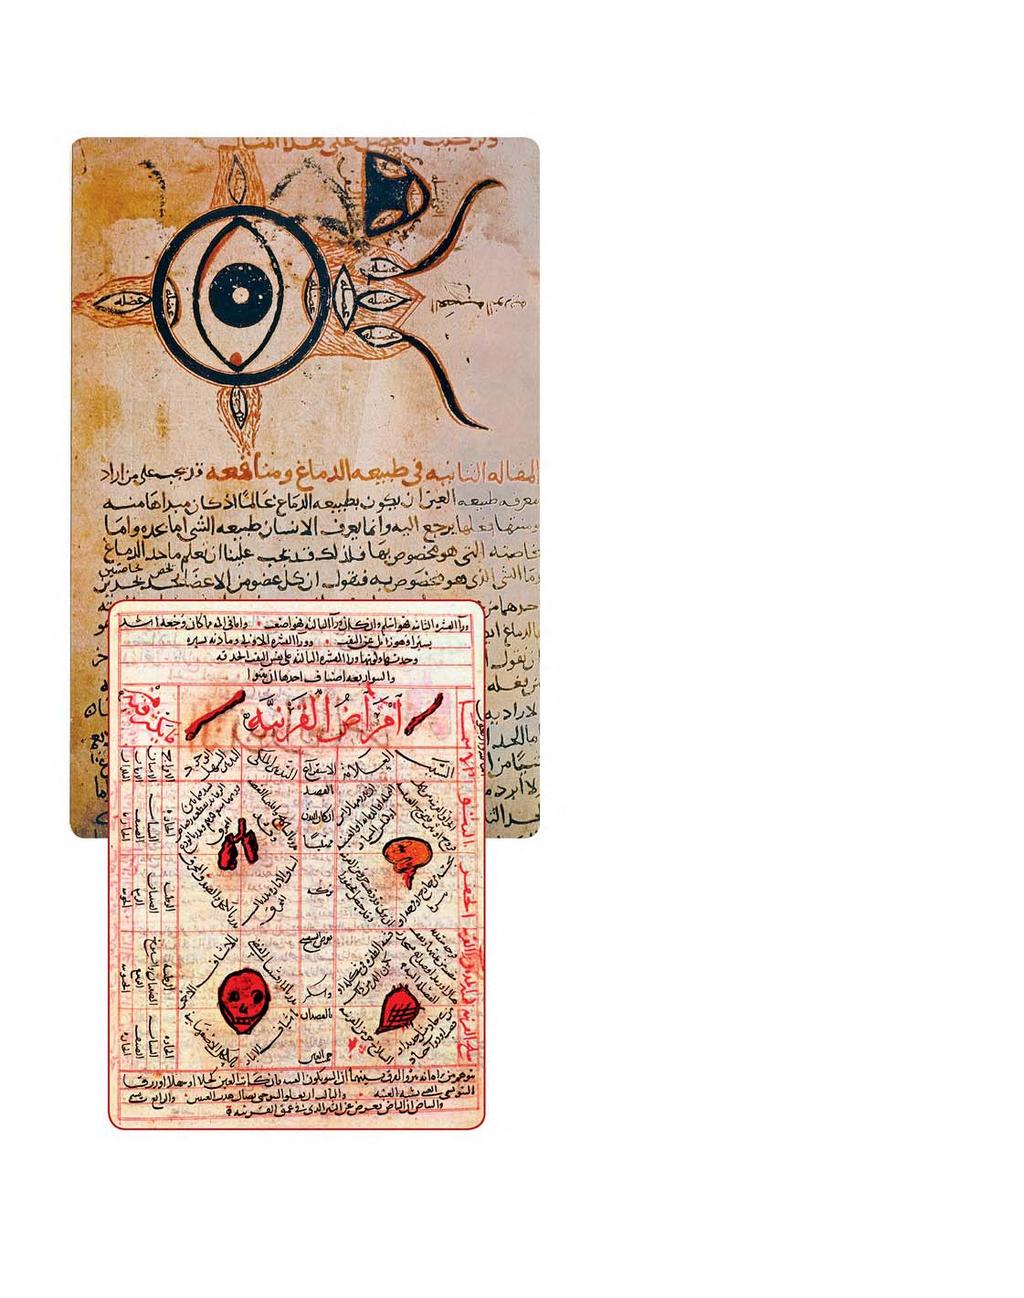 Hoenain ibn Isjak se diagram van die oog n Bladsy uit Avicenna se Kanon van Geneeskunde geskiedkundiges aangevoer dat die vertalers met die onderwerpe vertroud moes gewees het.